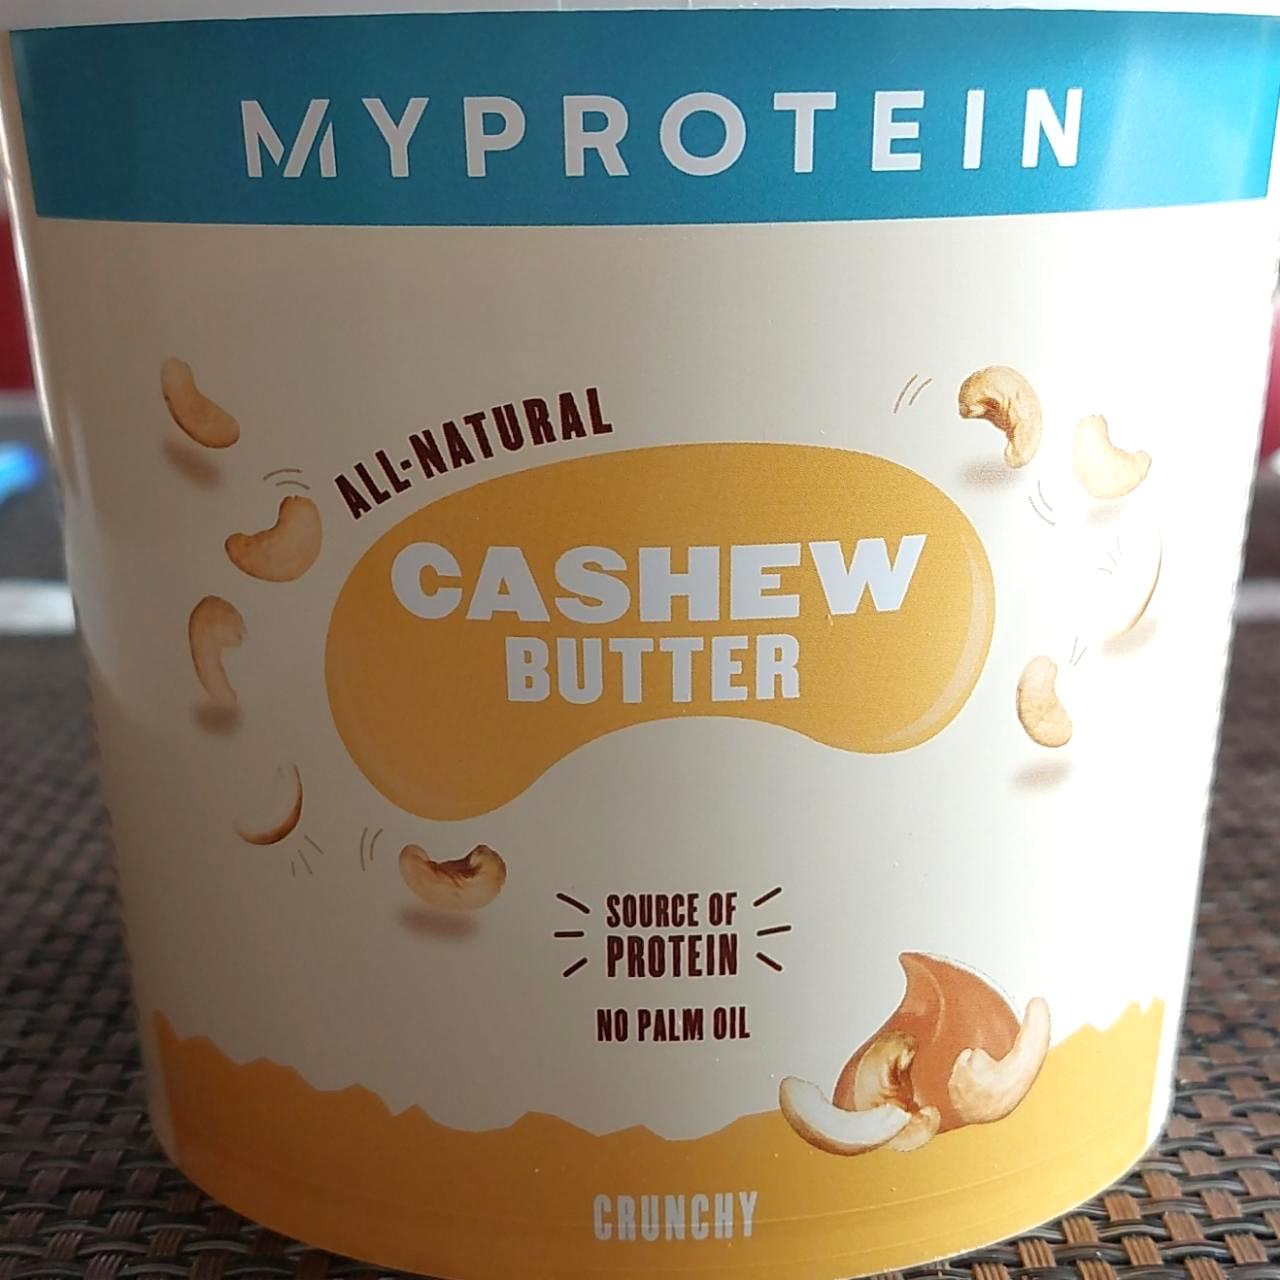 Képek - Cashew butter crunchy MyProtein